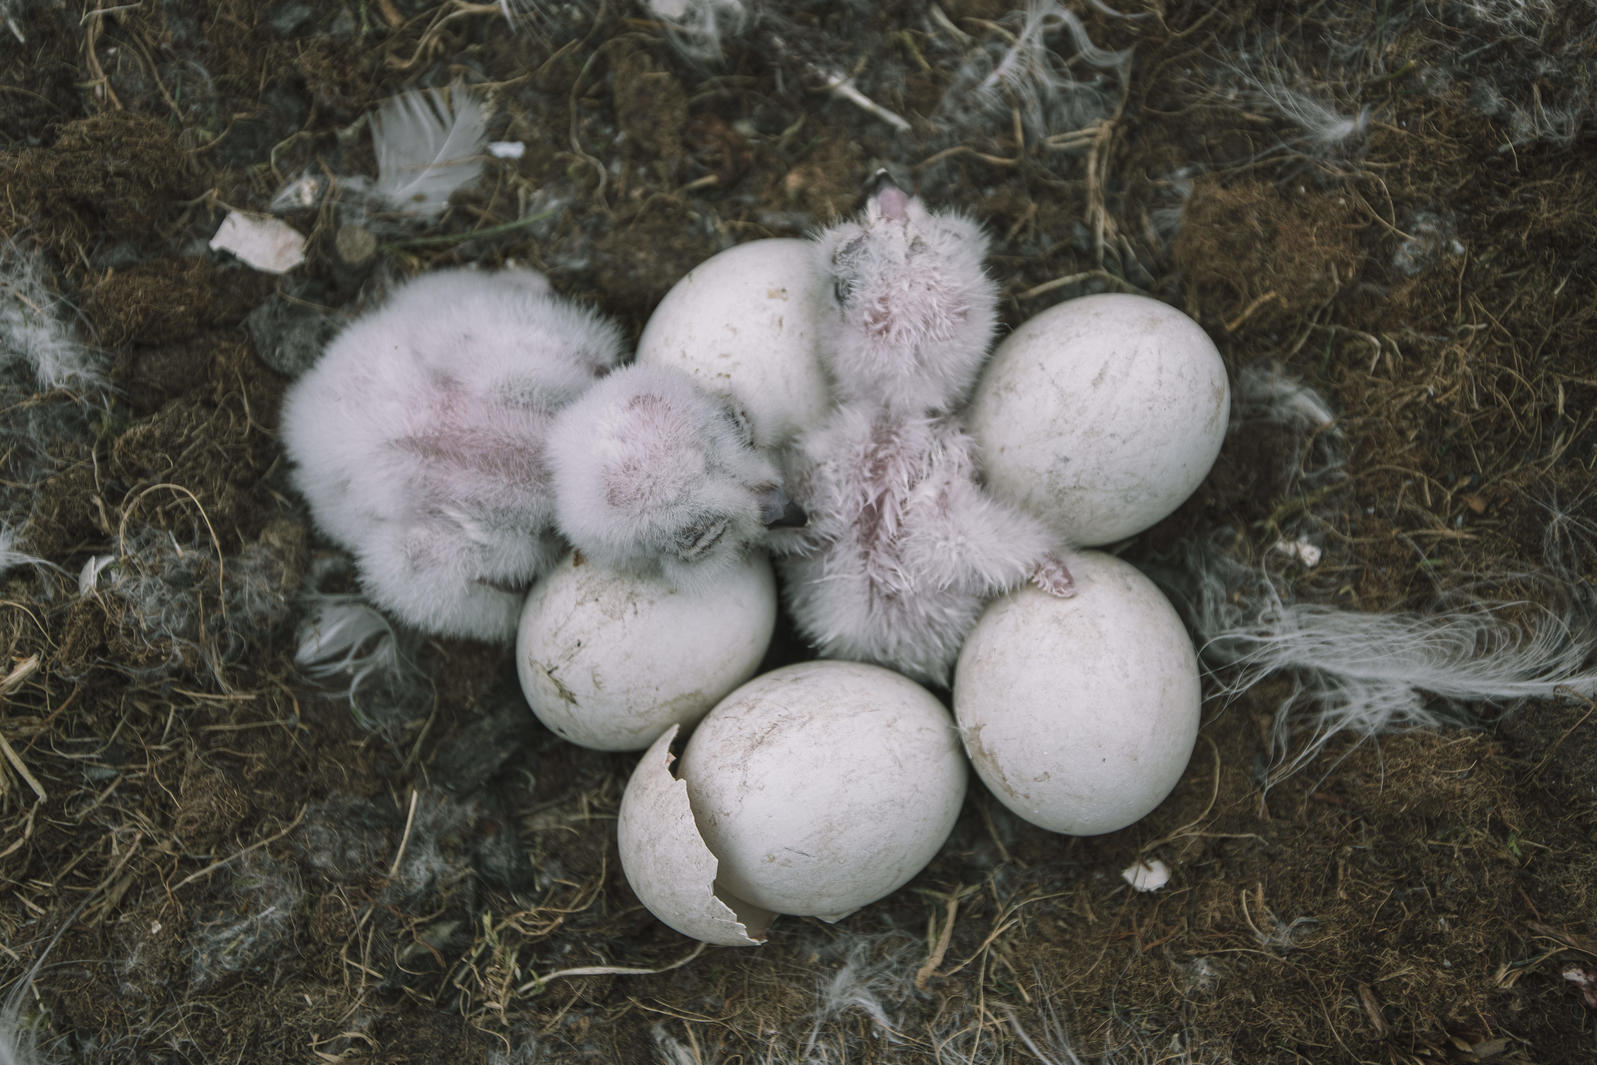 snowy owl nest